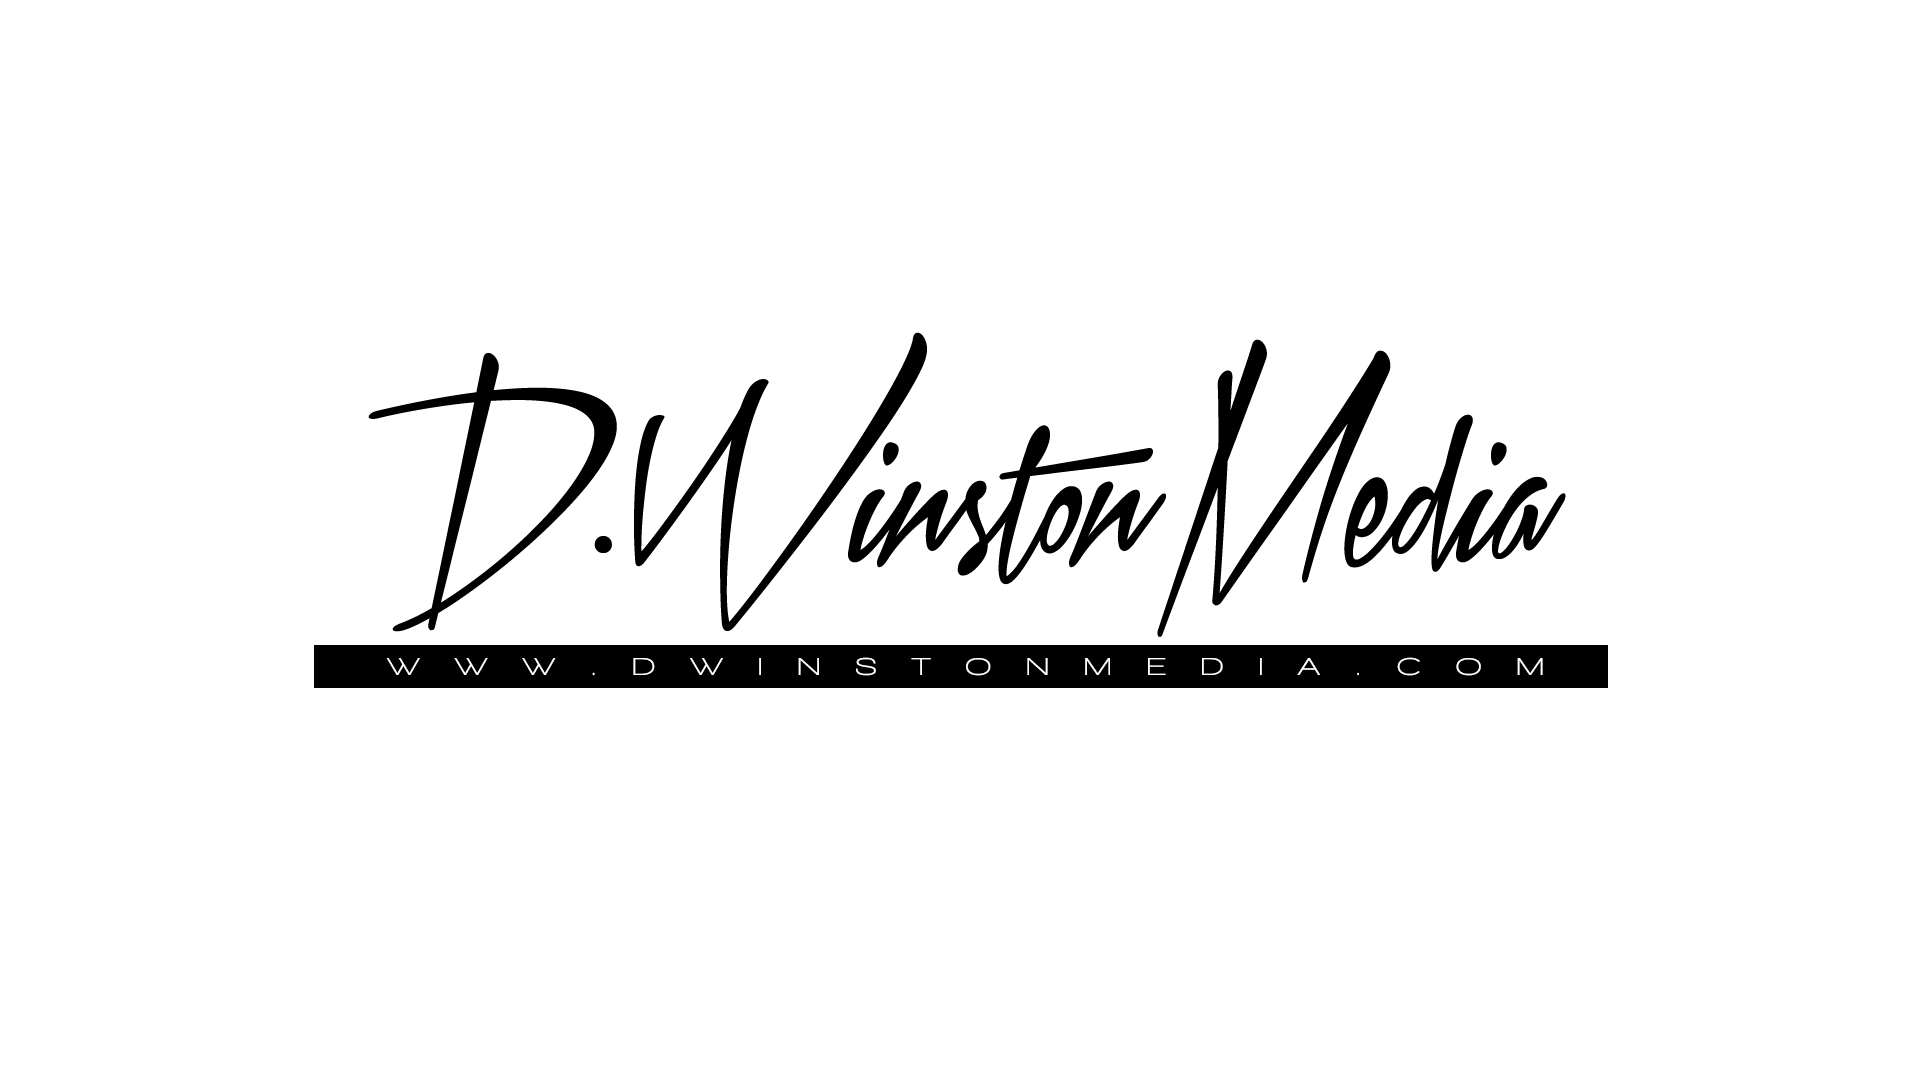 D Winston Media